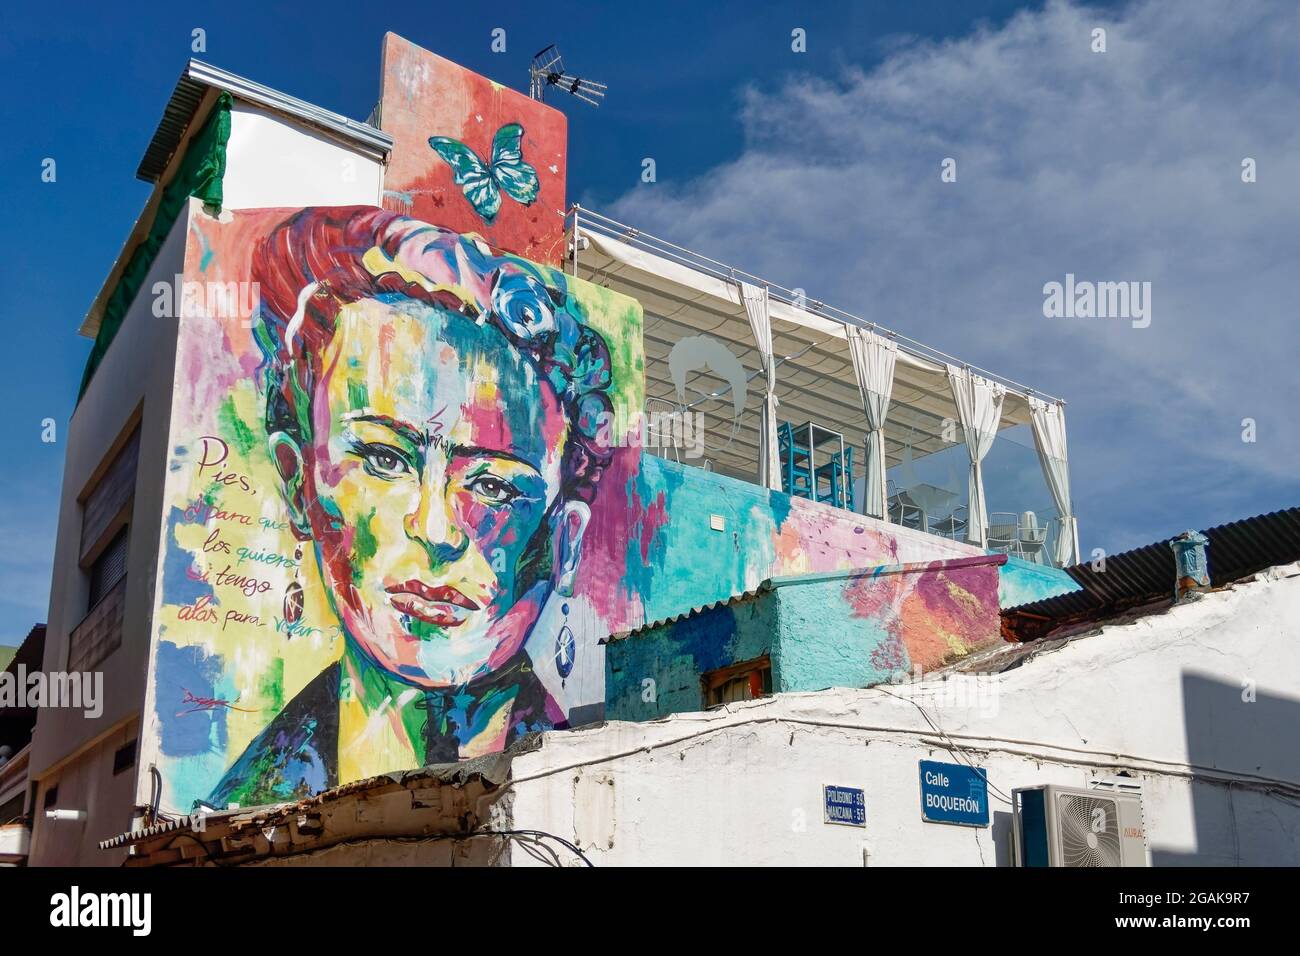 Graffiti von Frida Khalo , Malaga, Costa del Sol, Provinz Malaga, Andalusien, Spanien, Europa, Stock Photo